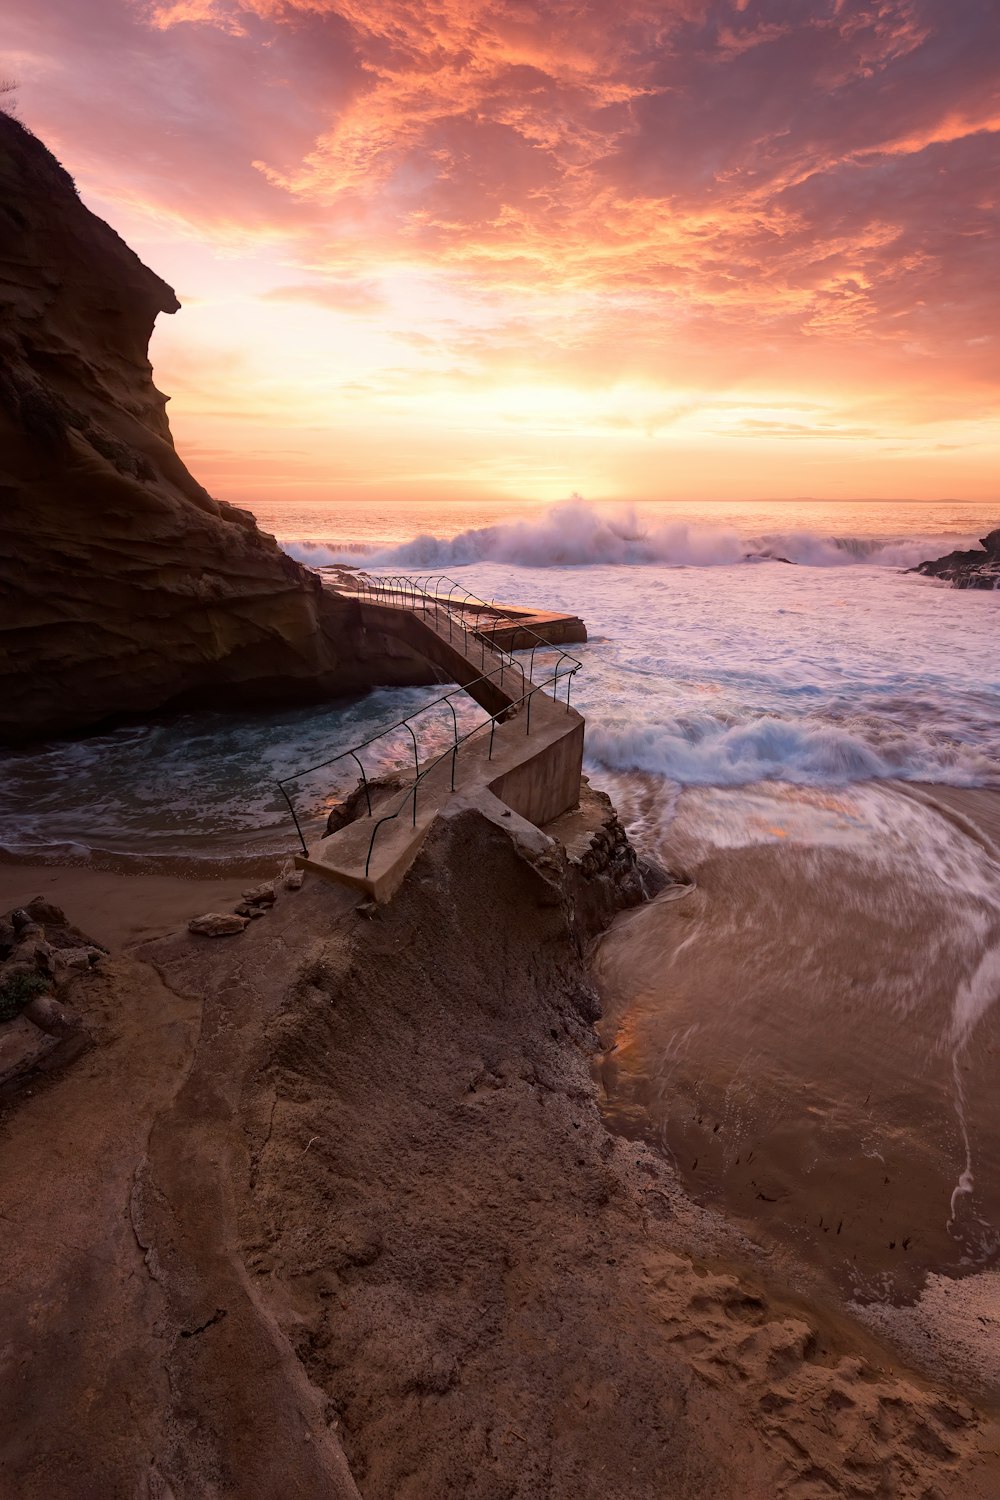 waves crashing on rocky coast during sunset